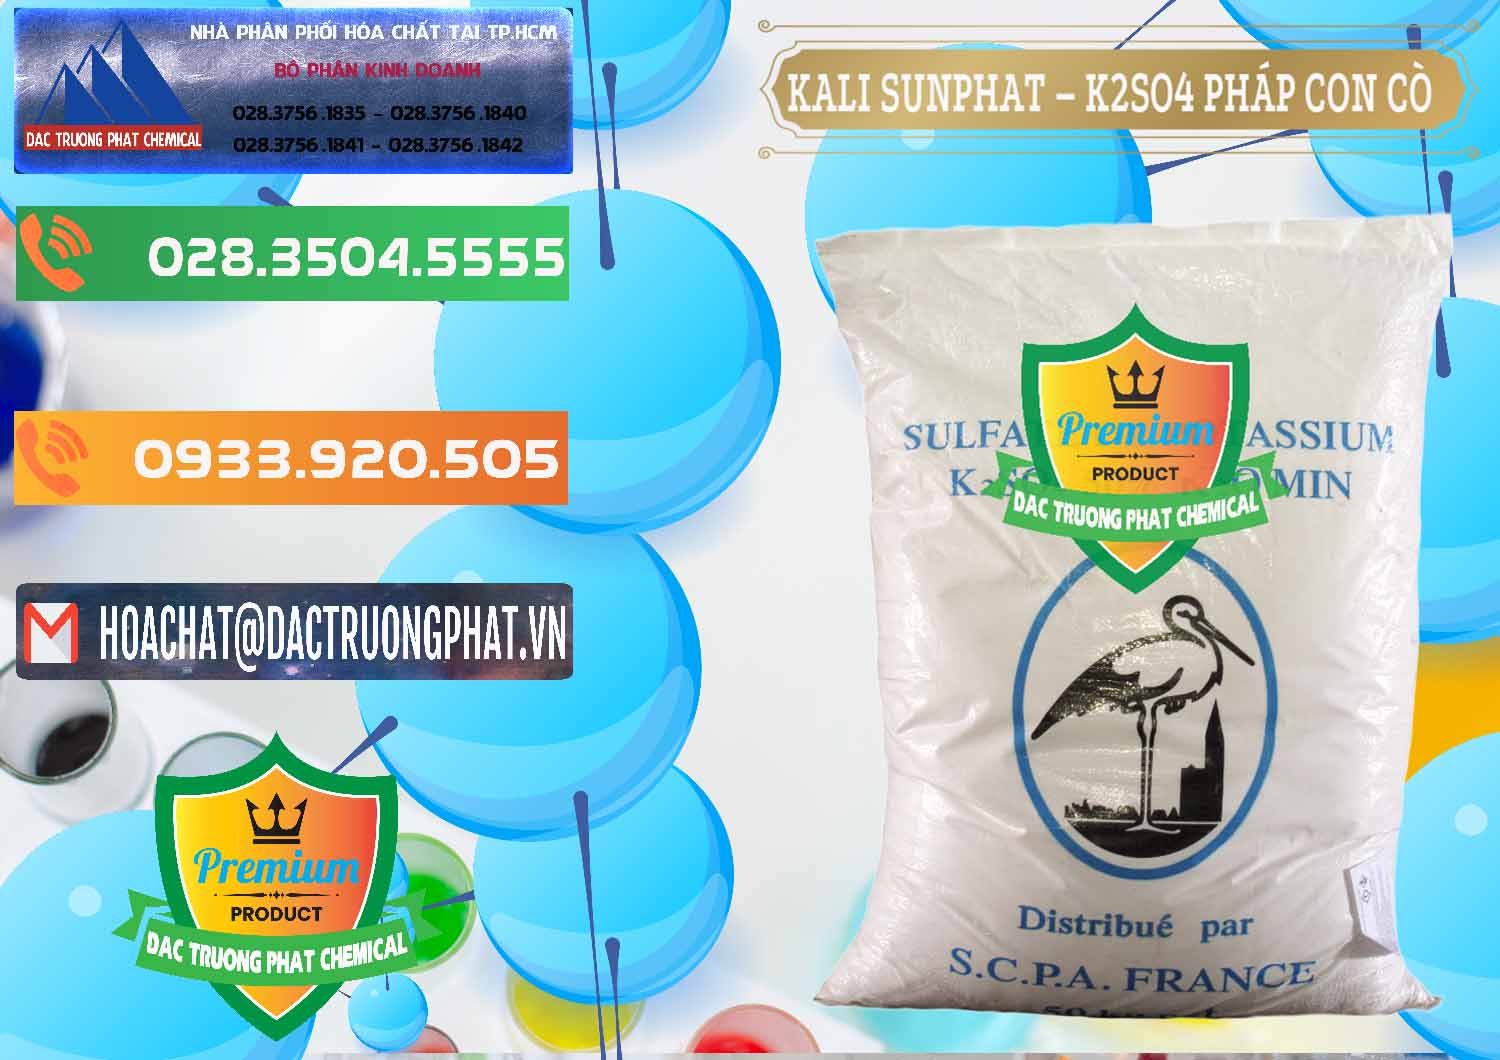 Cty chuyên bán và cung cấp Kali Sunphat – K2SO4 Con Cò Pháp France - 0083 - Cty chuyên cung ứng _ phân phối hóa chất tại TP.HCM - hoachatxulynuoc.com.vn